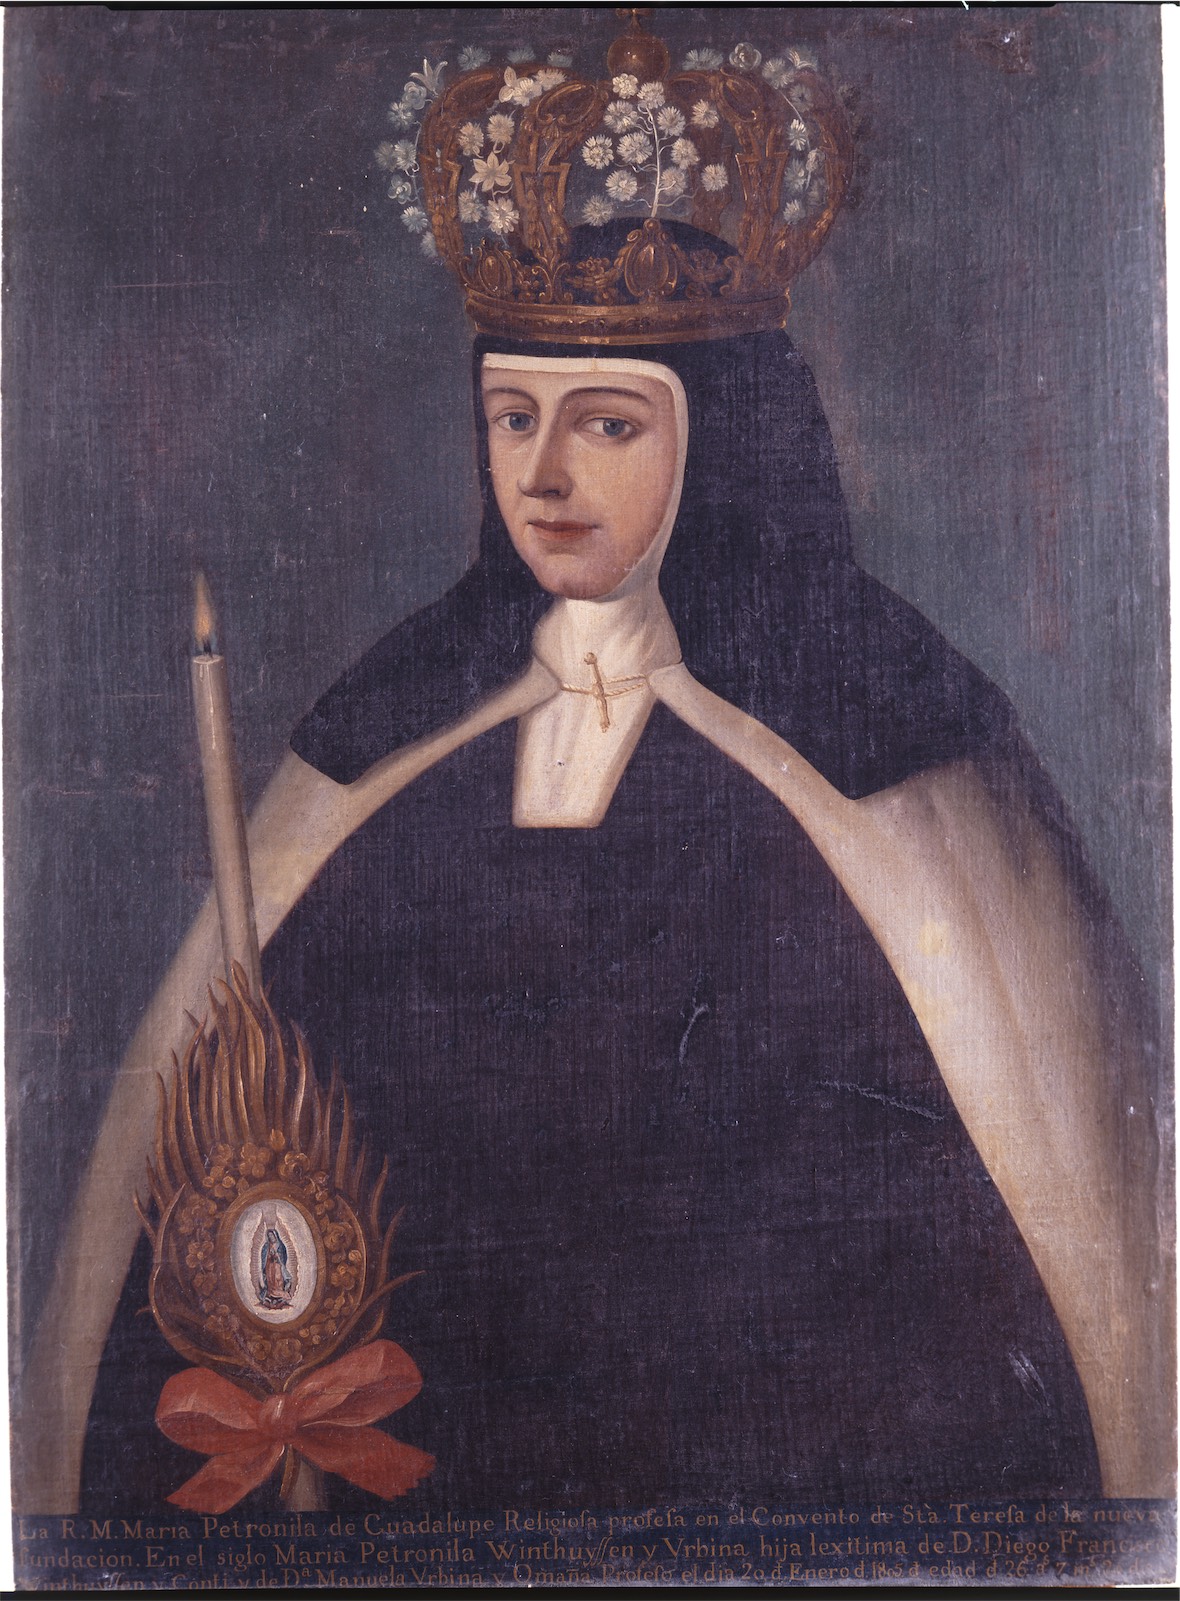 Sor María Petronila de Guadalupe